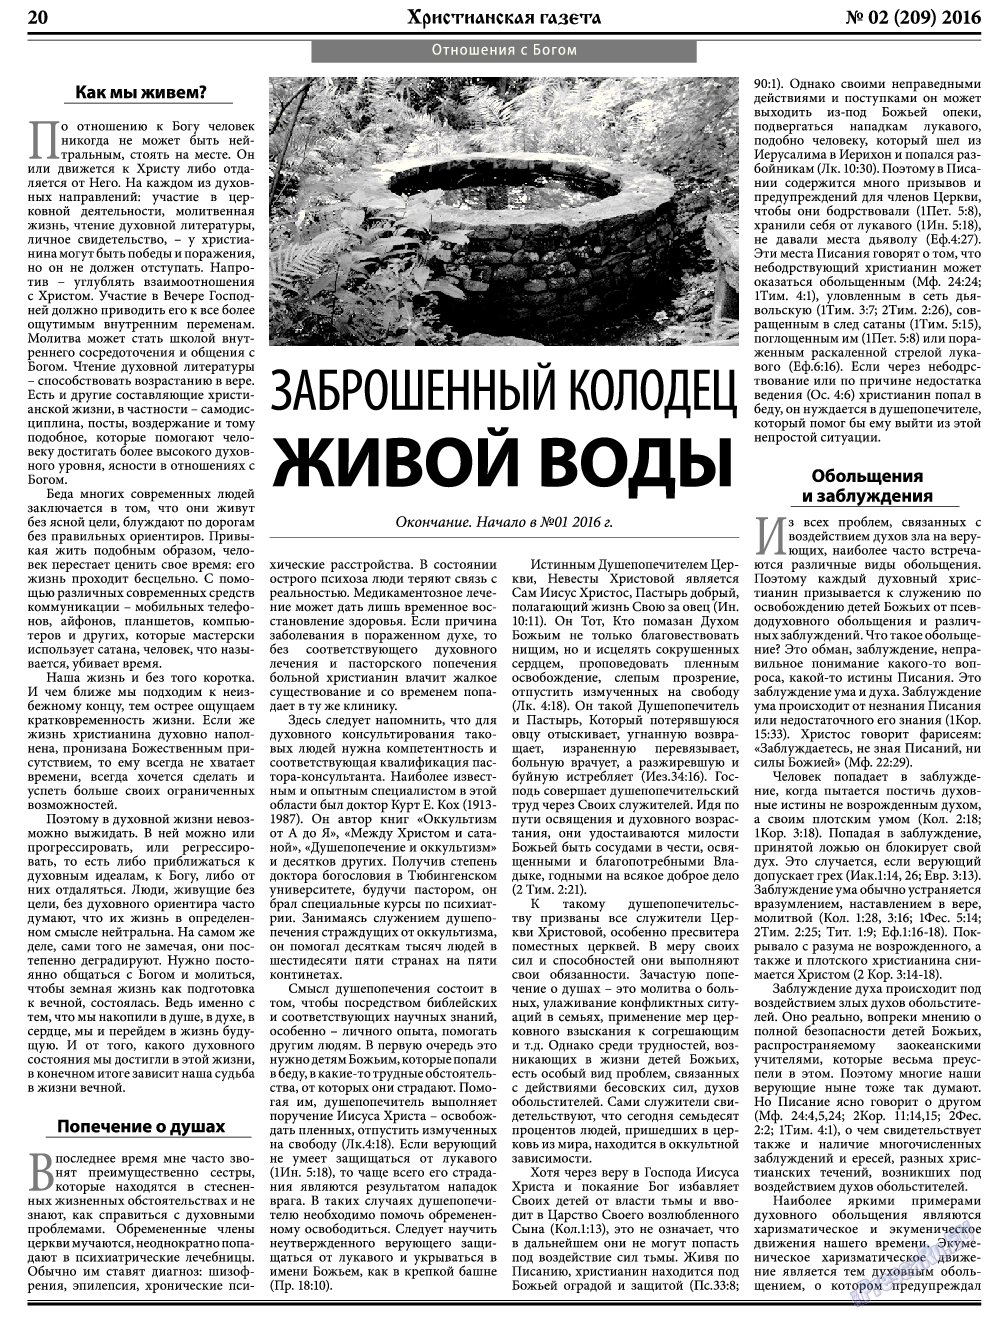 Христианская газета, газета. 2016 №2 стр.28